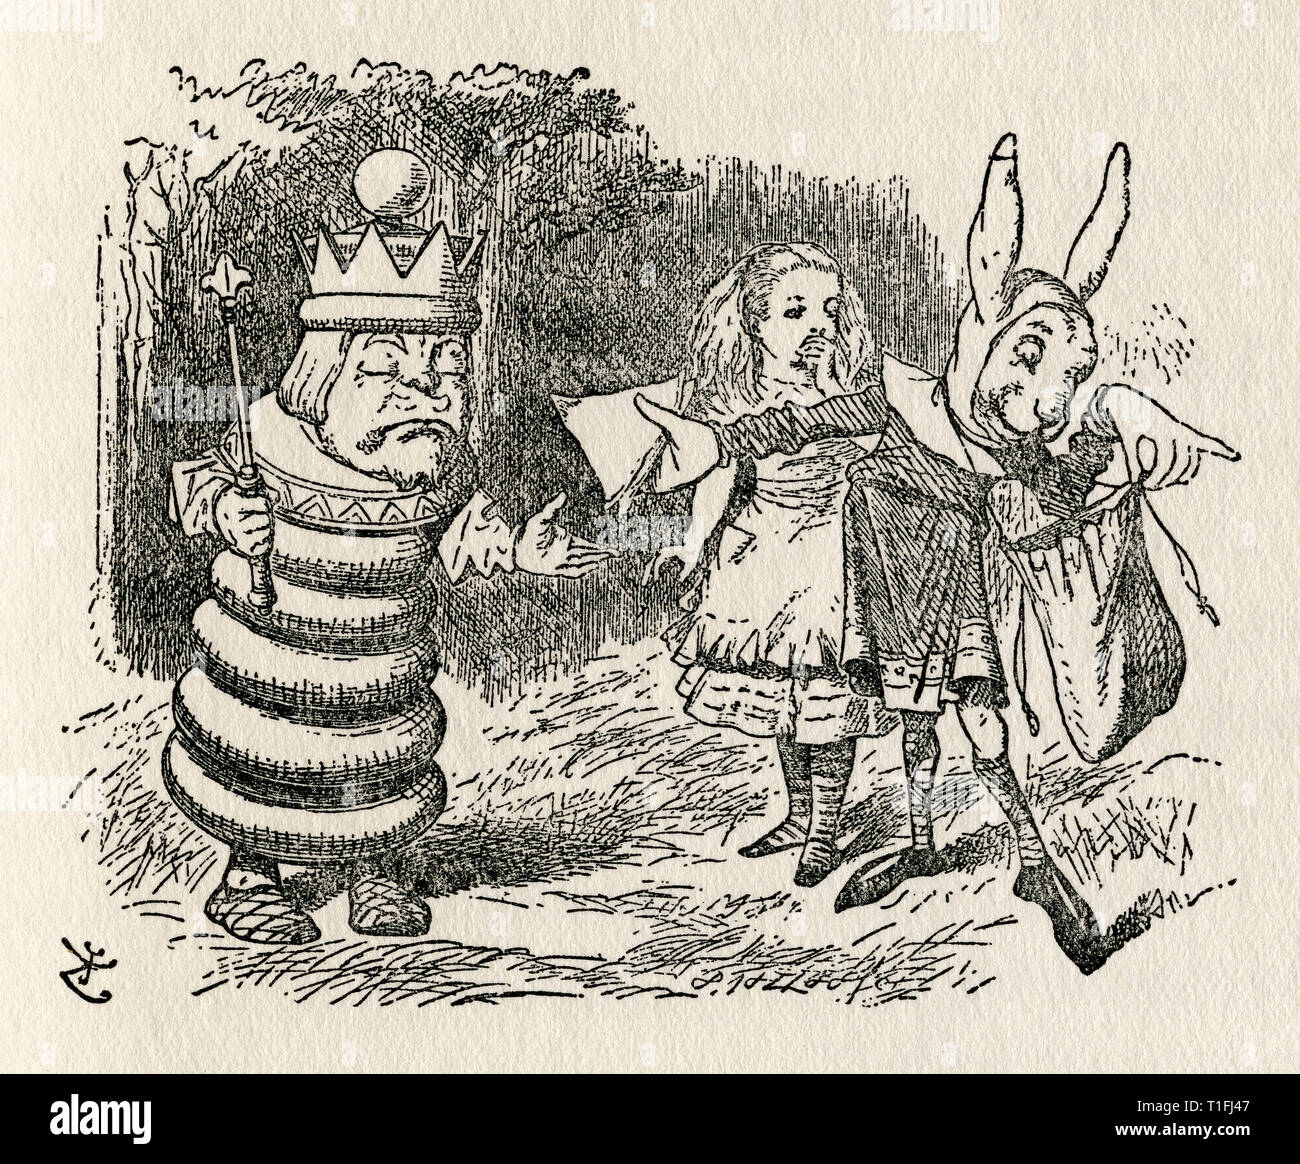 Alice mit dem weissen König und Hasius. Abbildung von Sir John Tenniel, (1820 - 1914). Aus dem Buch Durch den Spiegel und was Alice dort fand, Lewis Carroll, veröffentlicht London, 1912. Stockfoto